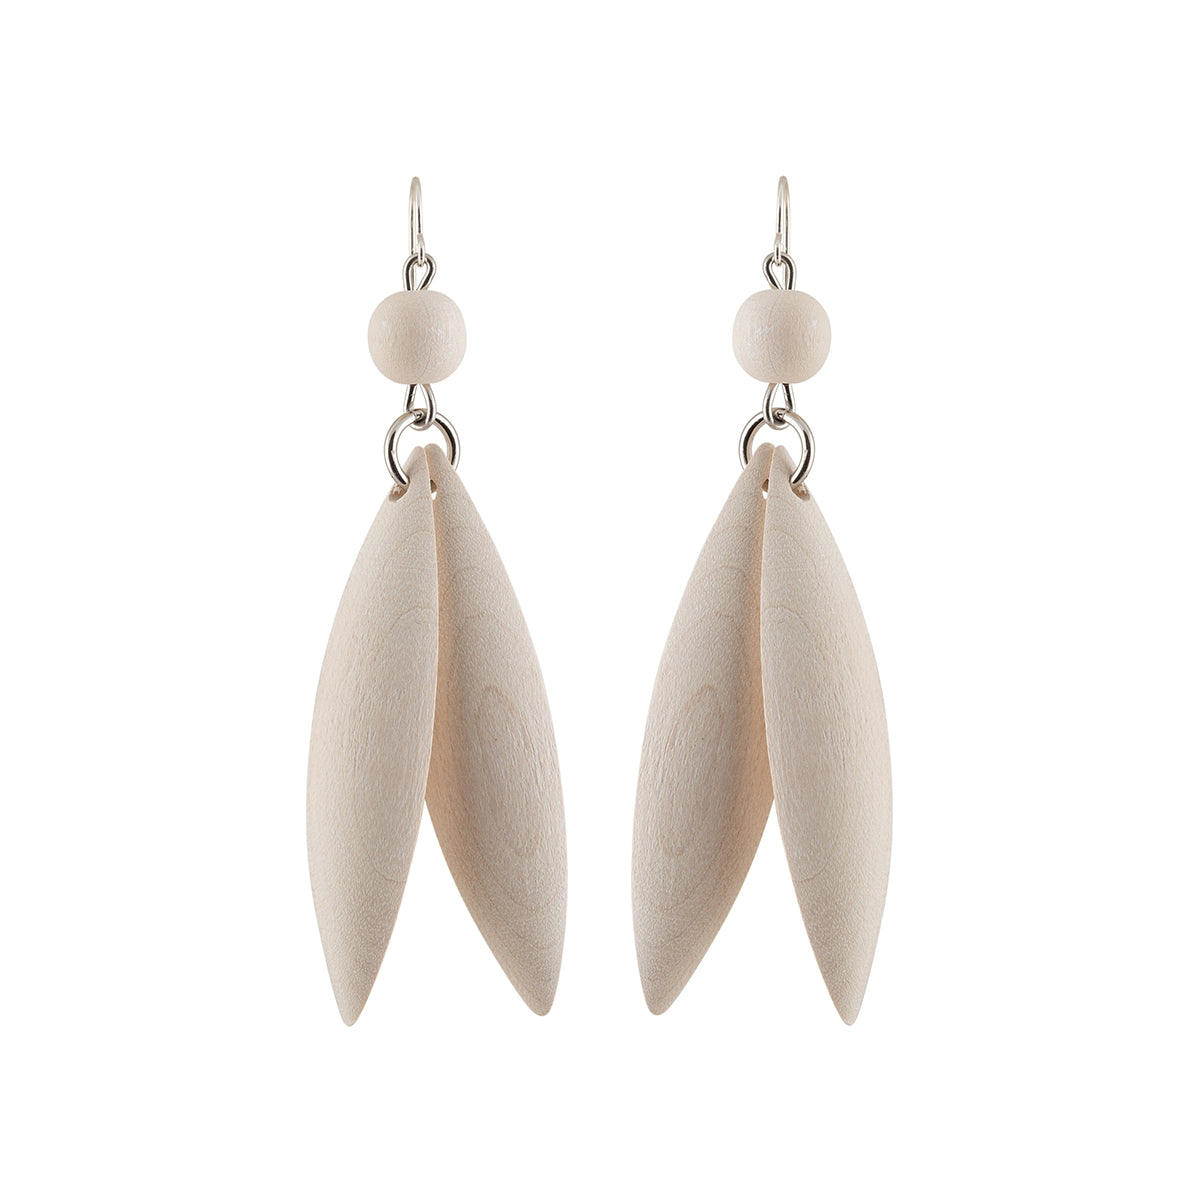 Jalava earrings, white